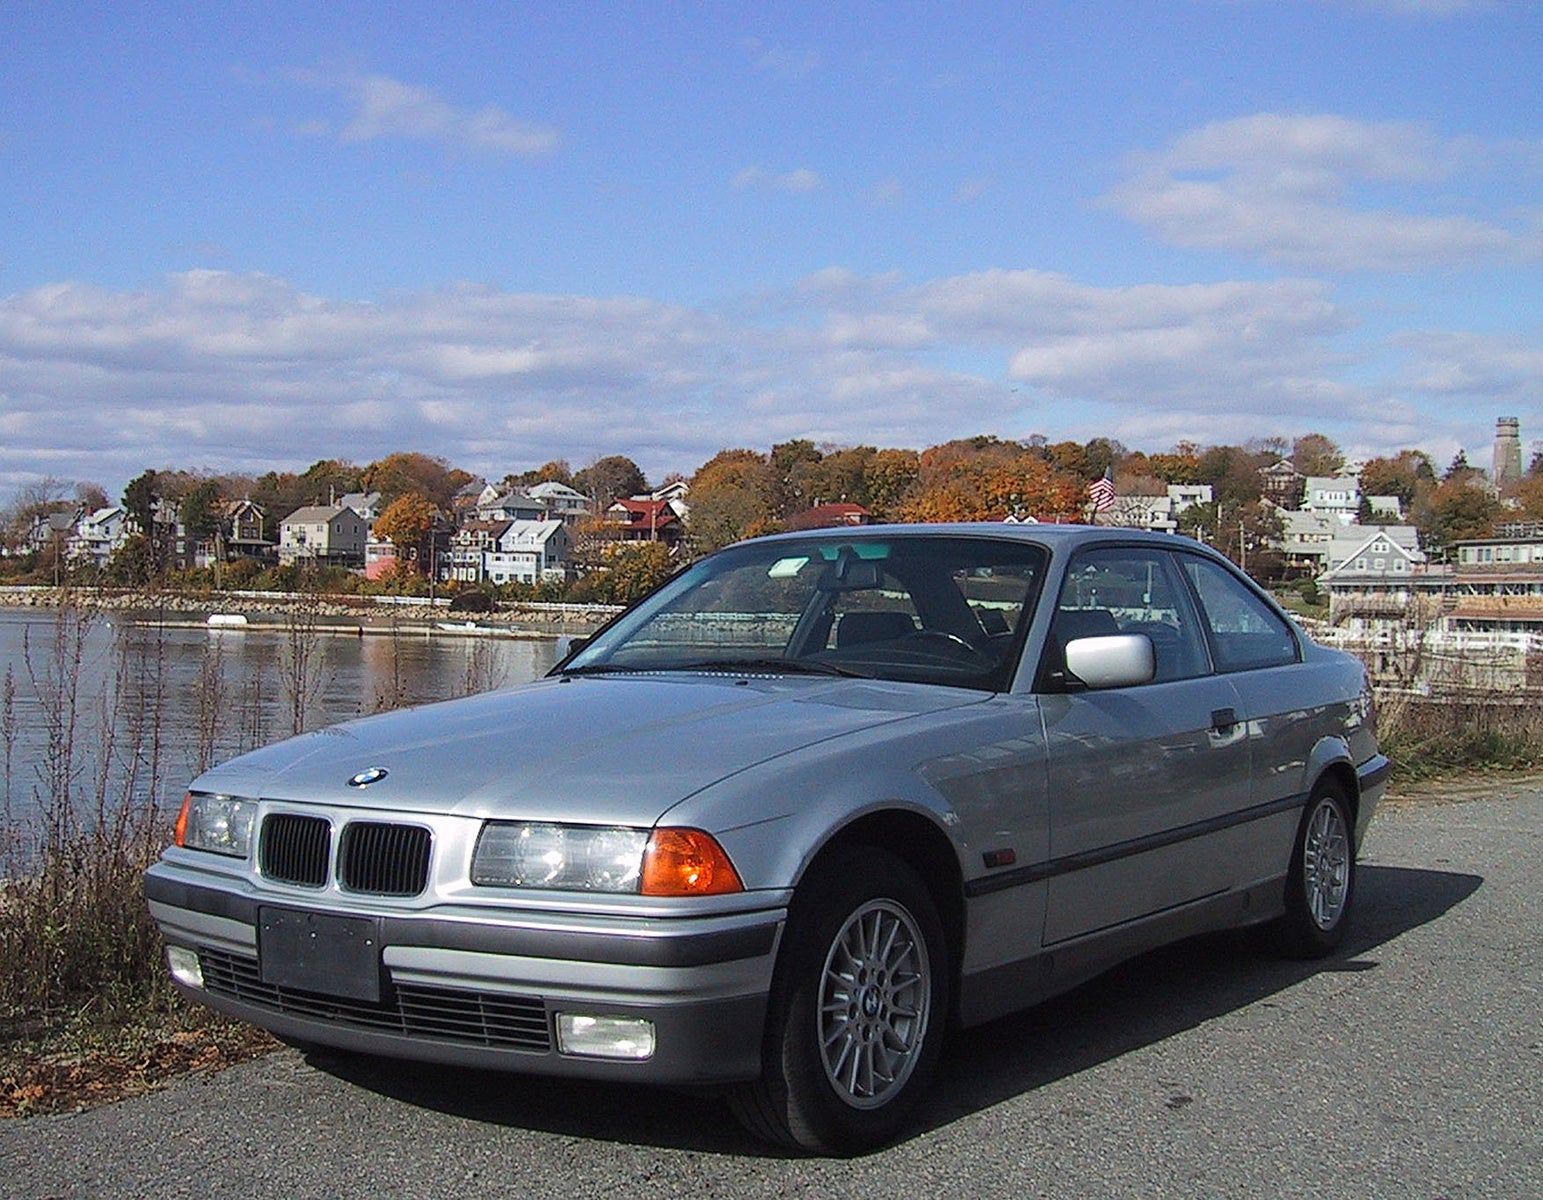 1996 BMW 3 Series - Pictures - CarGurus